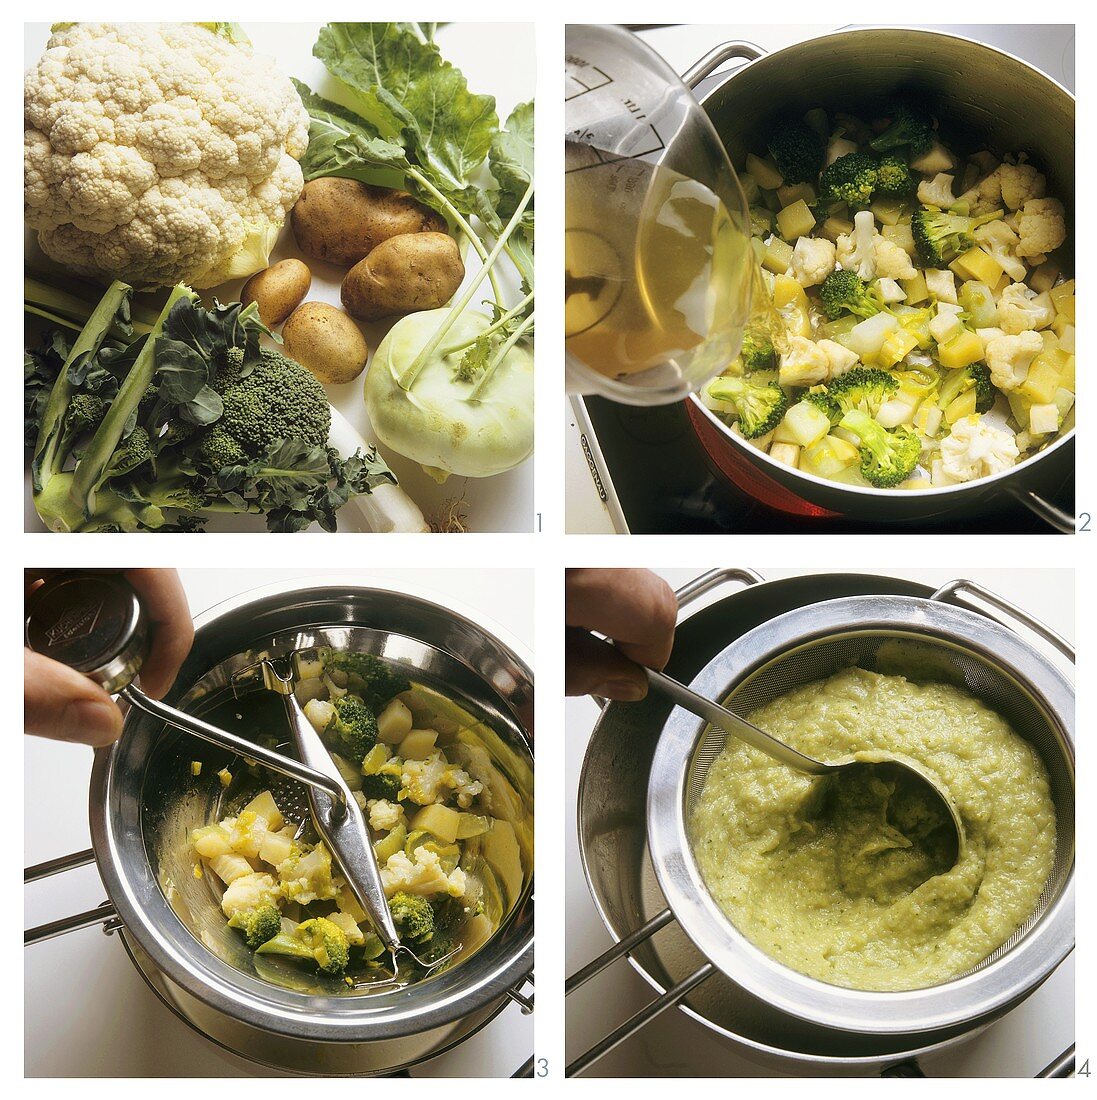 Preparing pureed vegetable soup